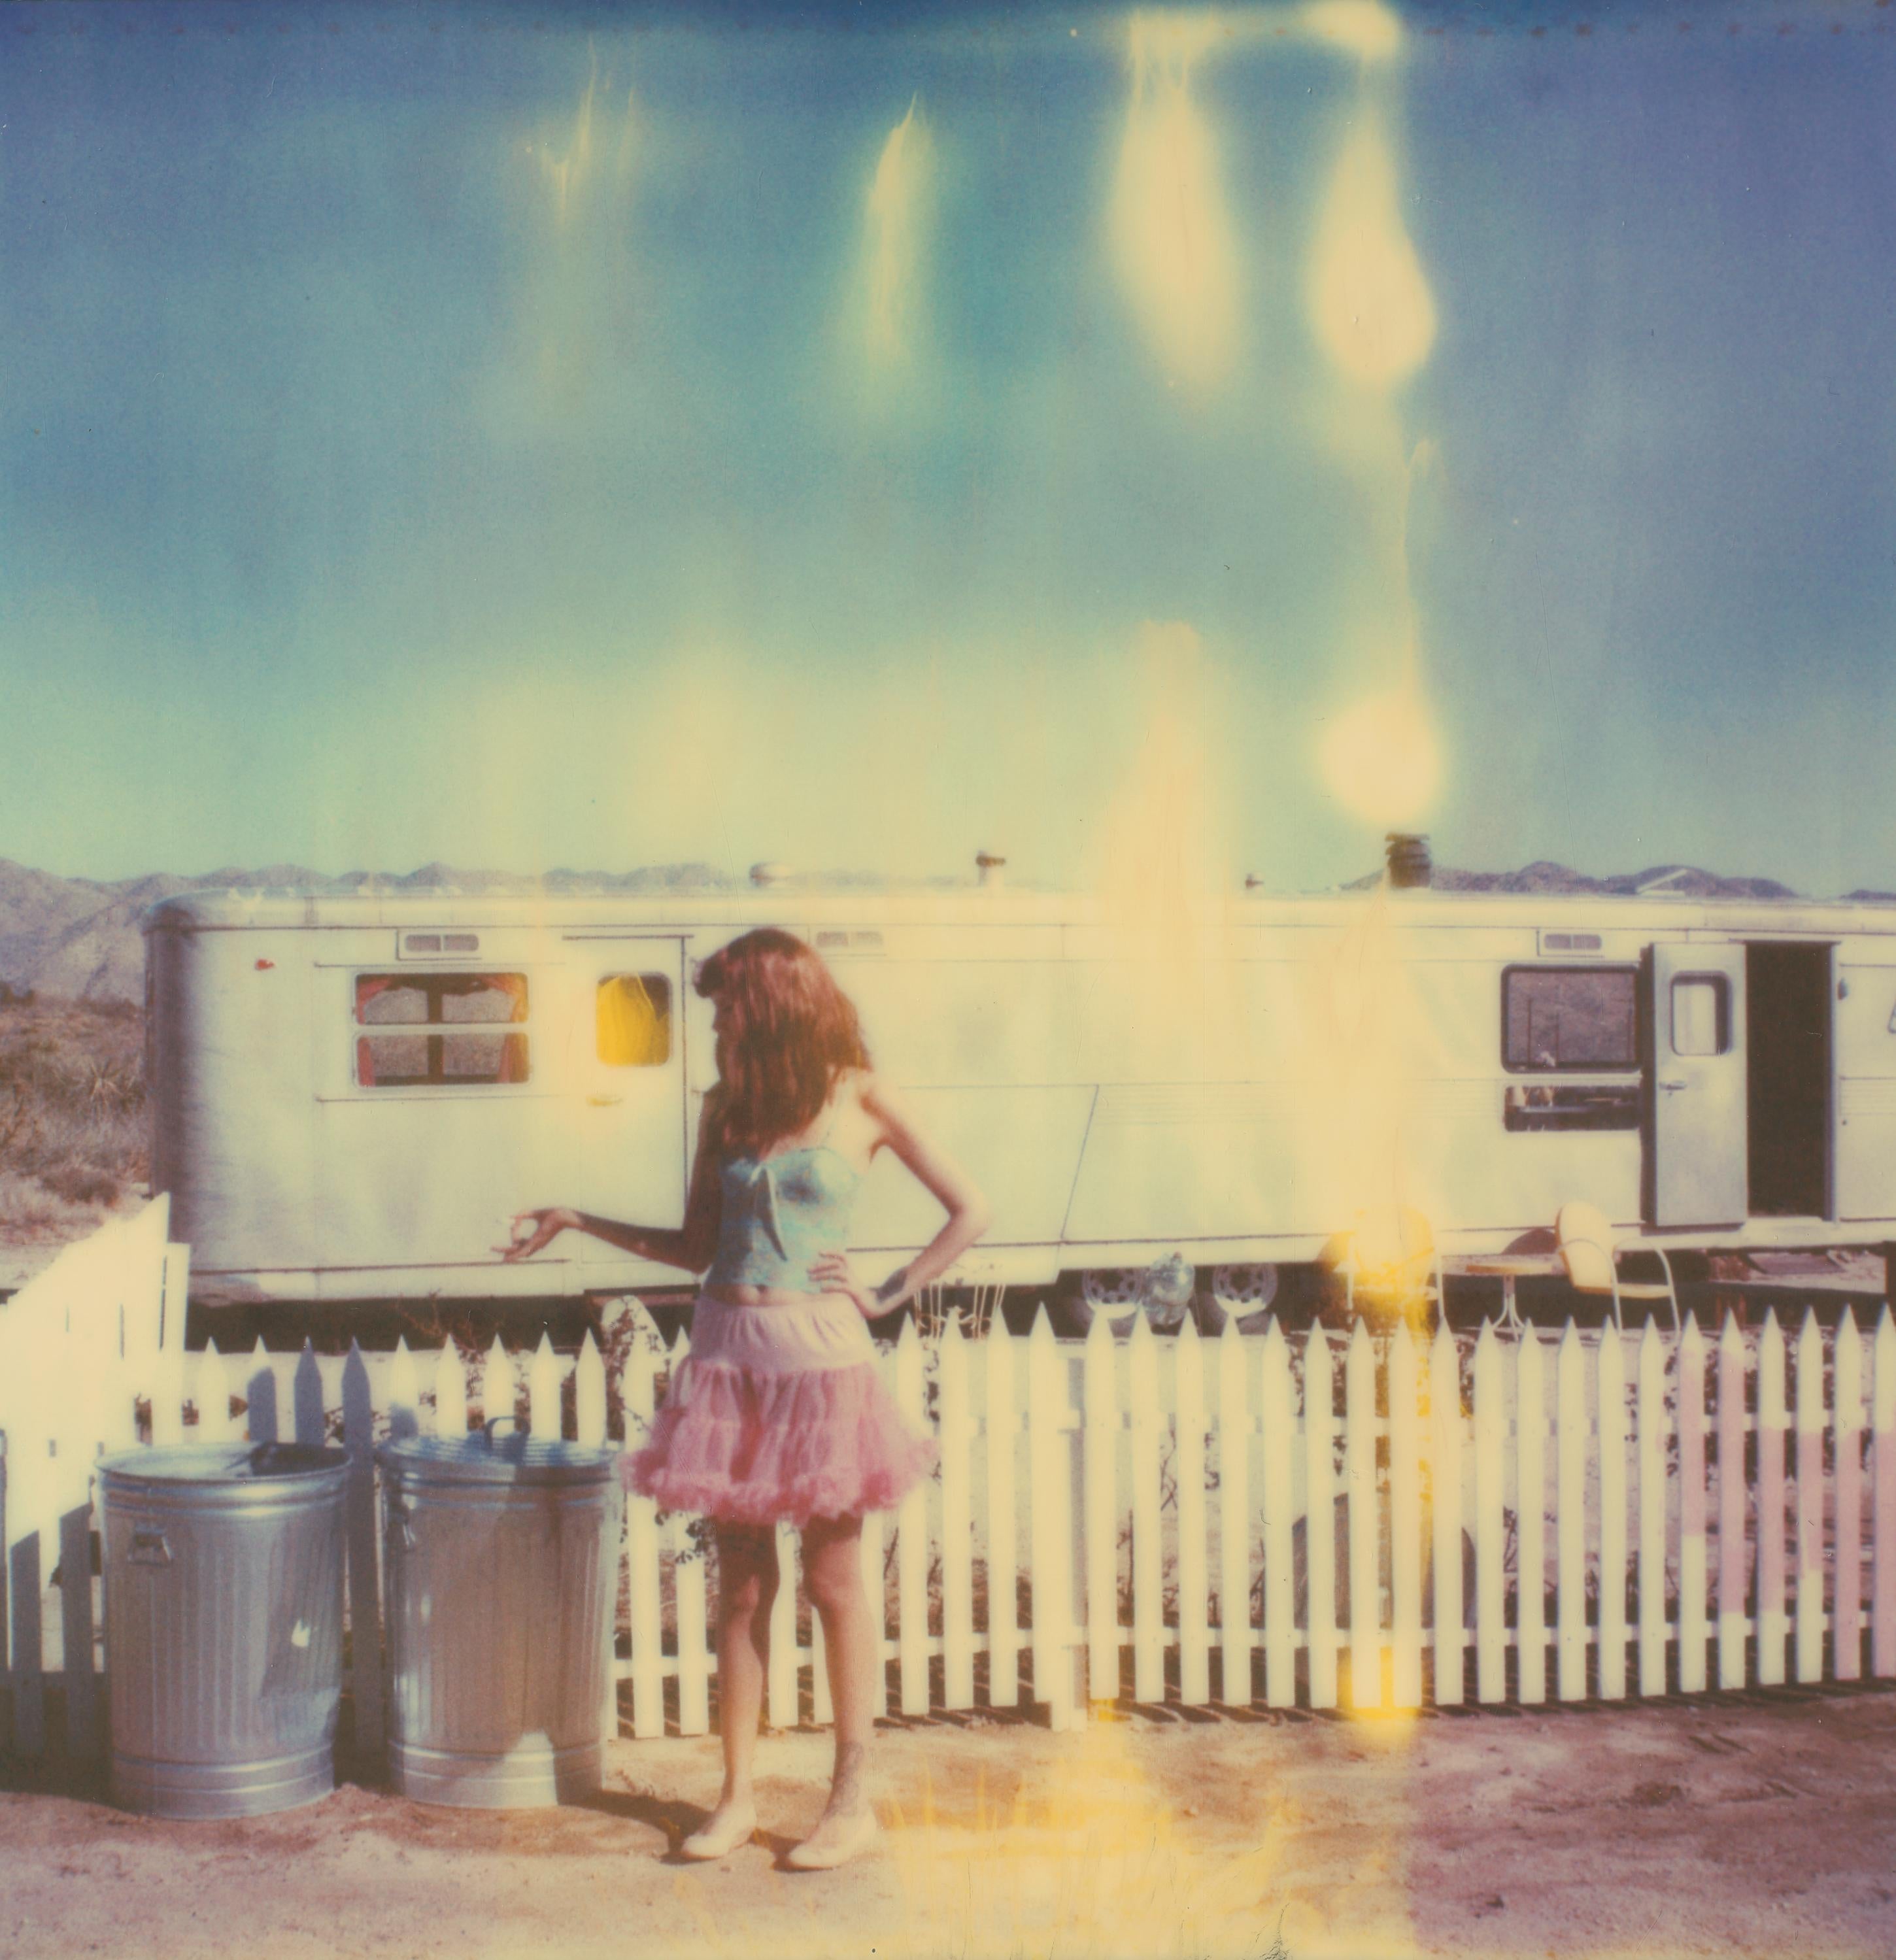 Figurative Photograph Stefanie Schneider - Faisant la magie (la fille derrière la clôture de picket blanche)